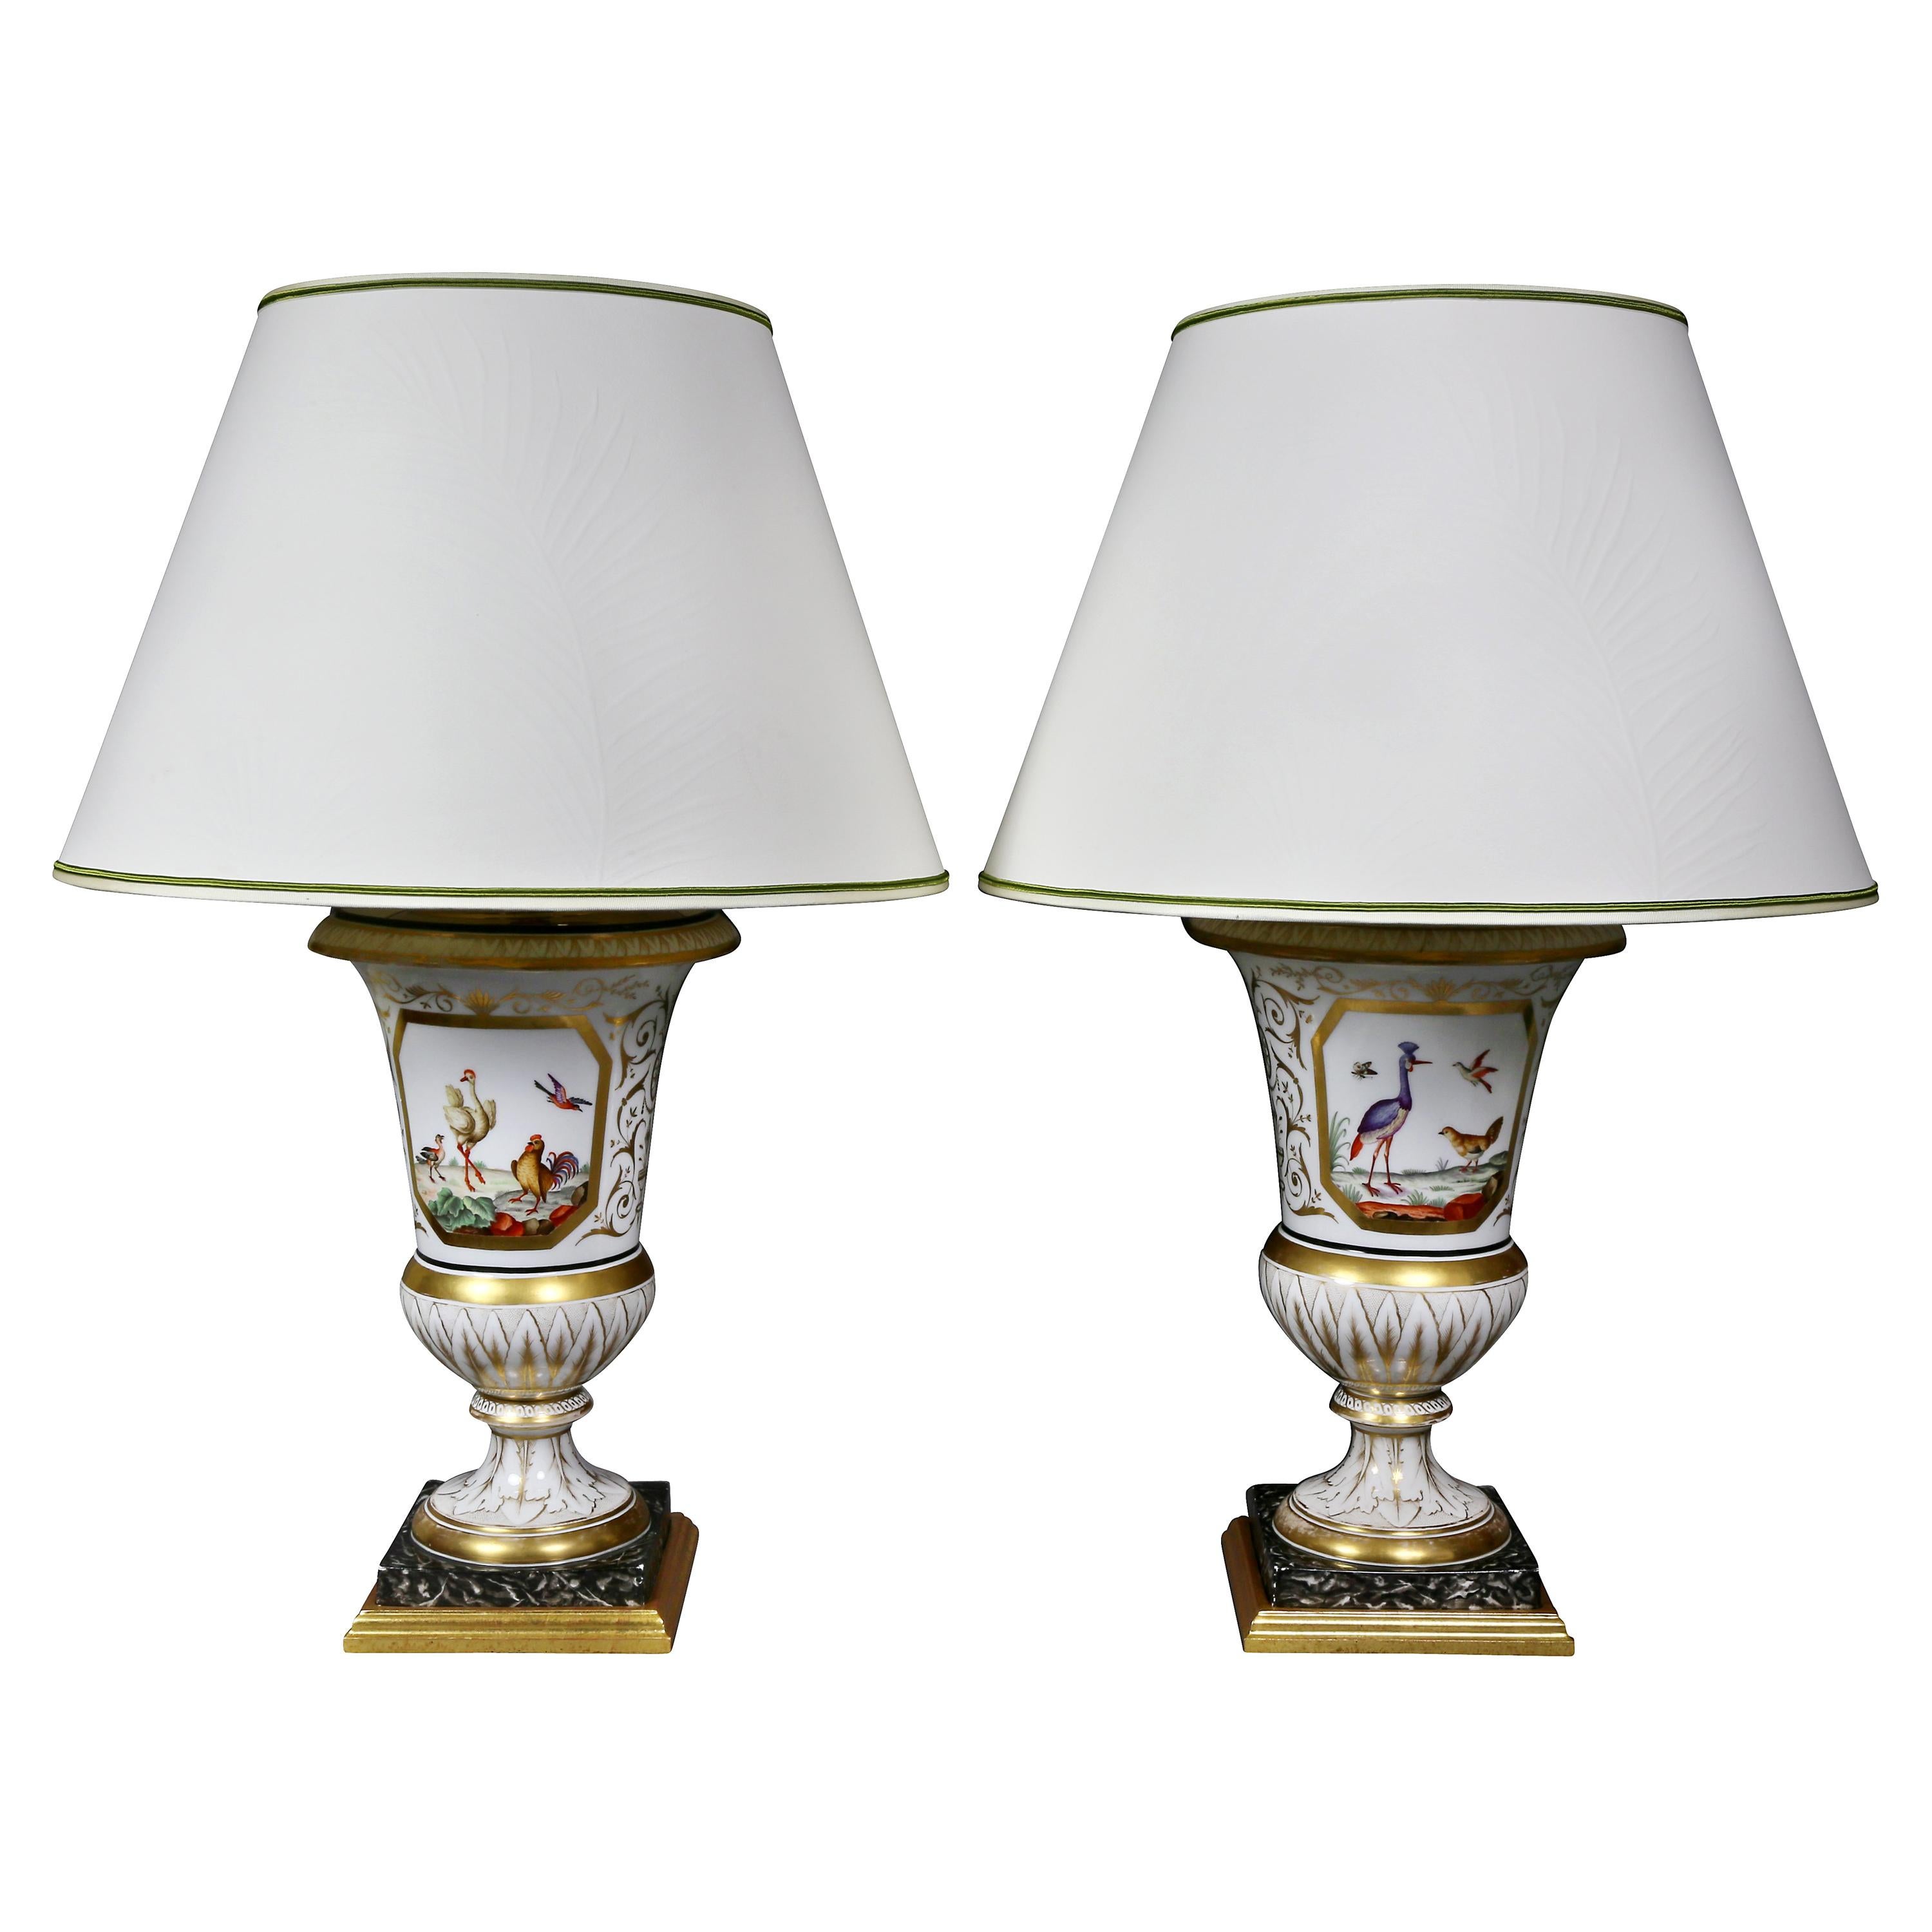 Pair of Paris Porcelain Urn Form Table Lamps